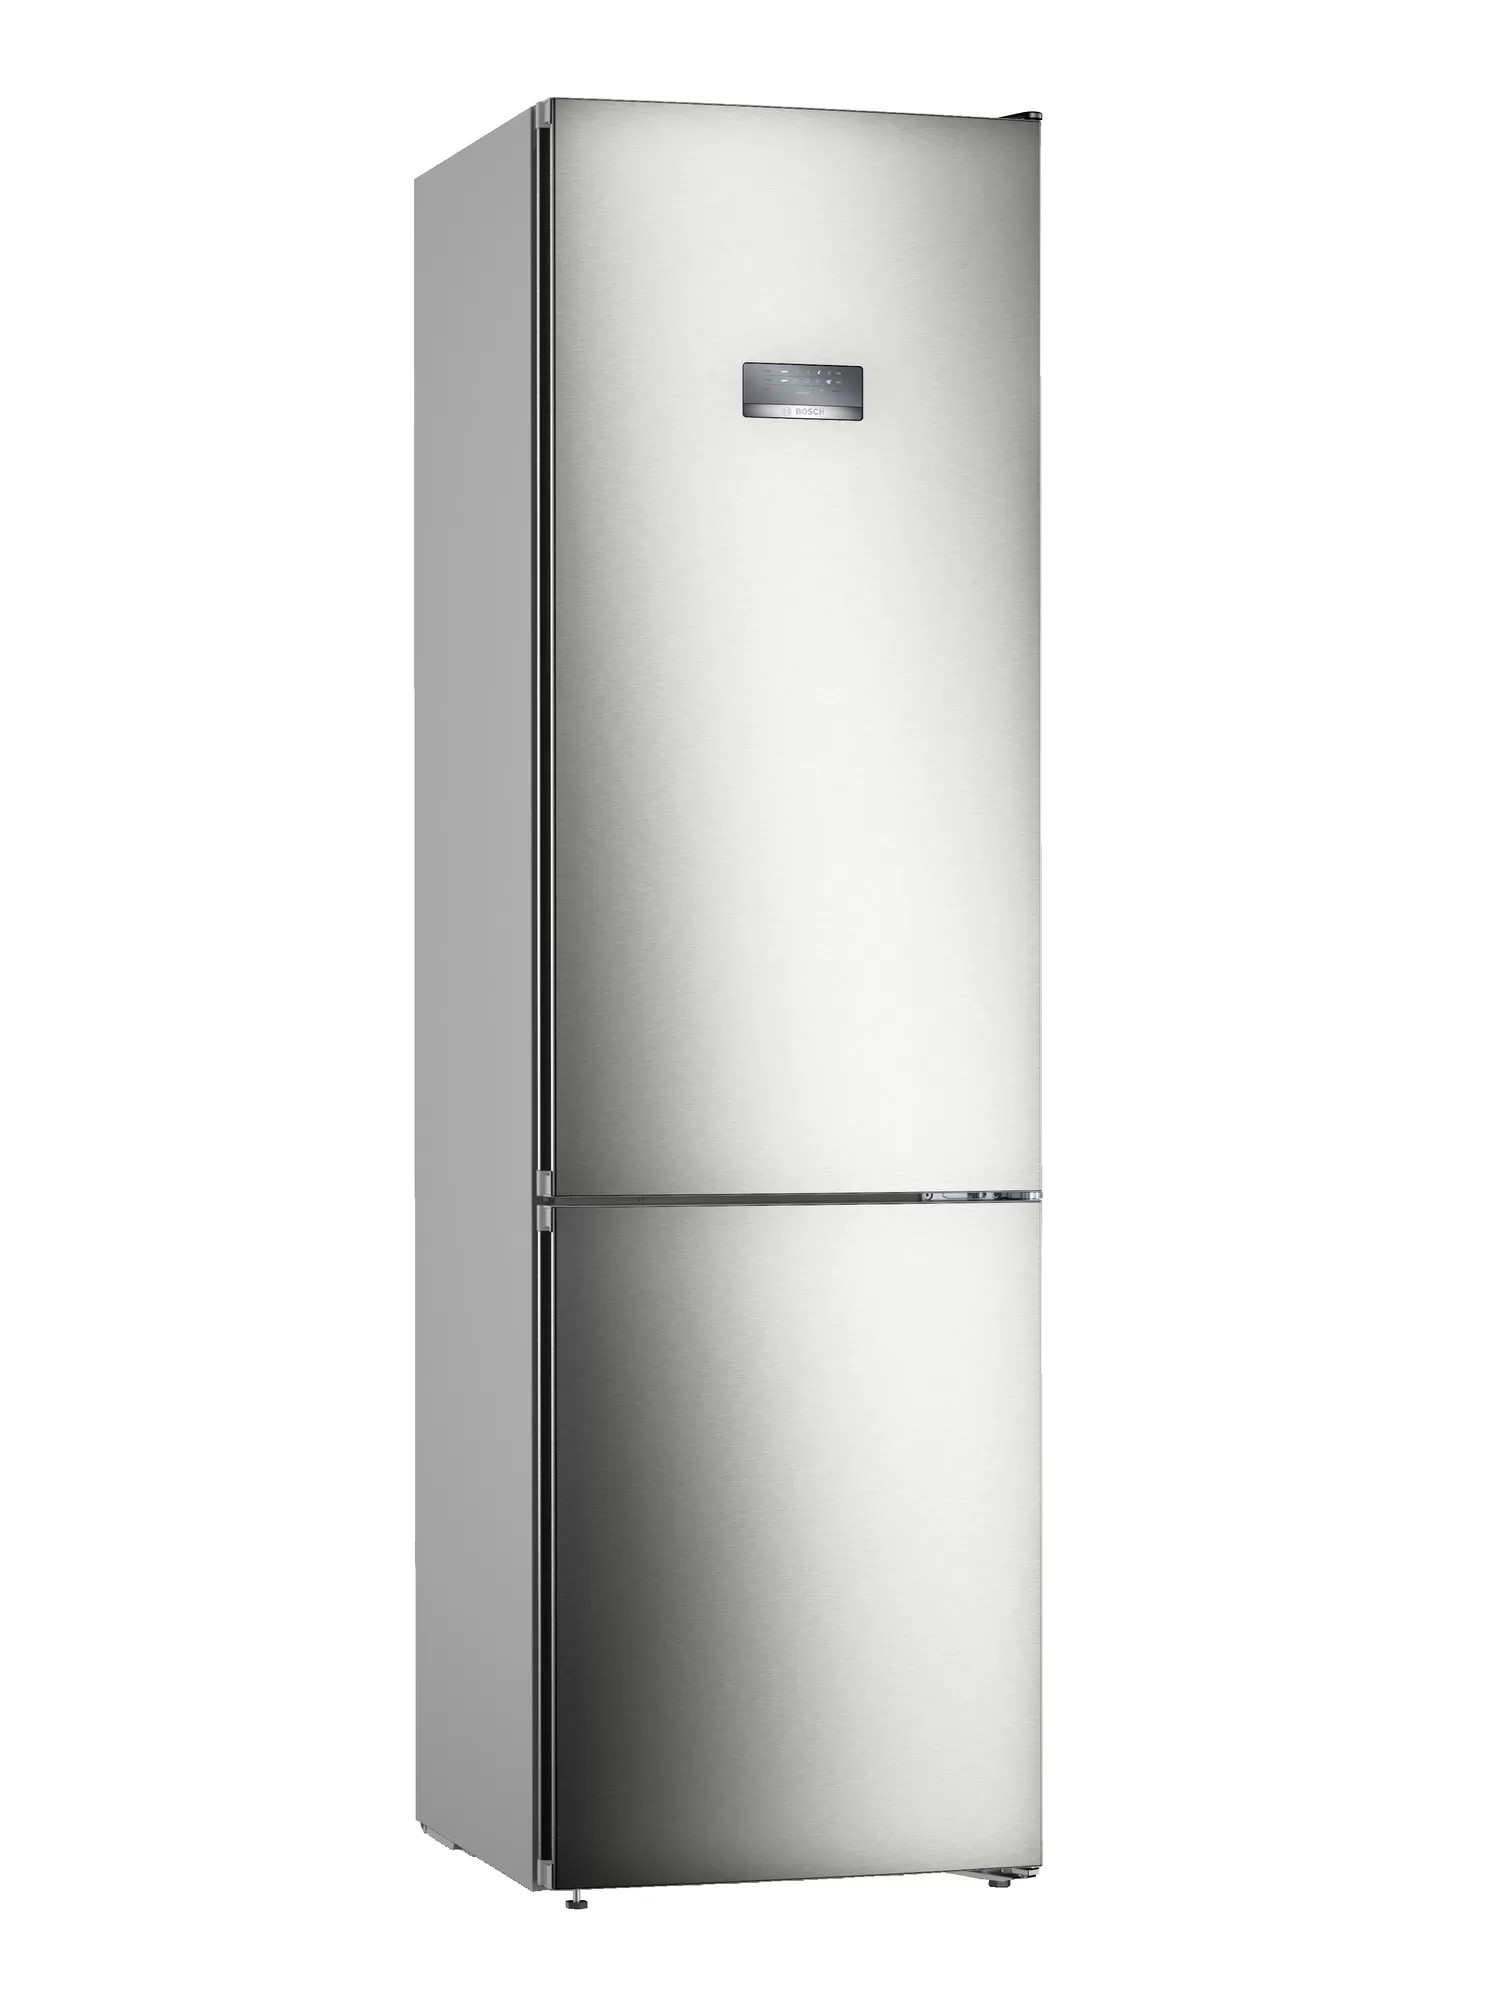 Холодильник BOSCH KGN39VI25R																		 — описание, фото, цены в интернет-магазине Премьер Техно